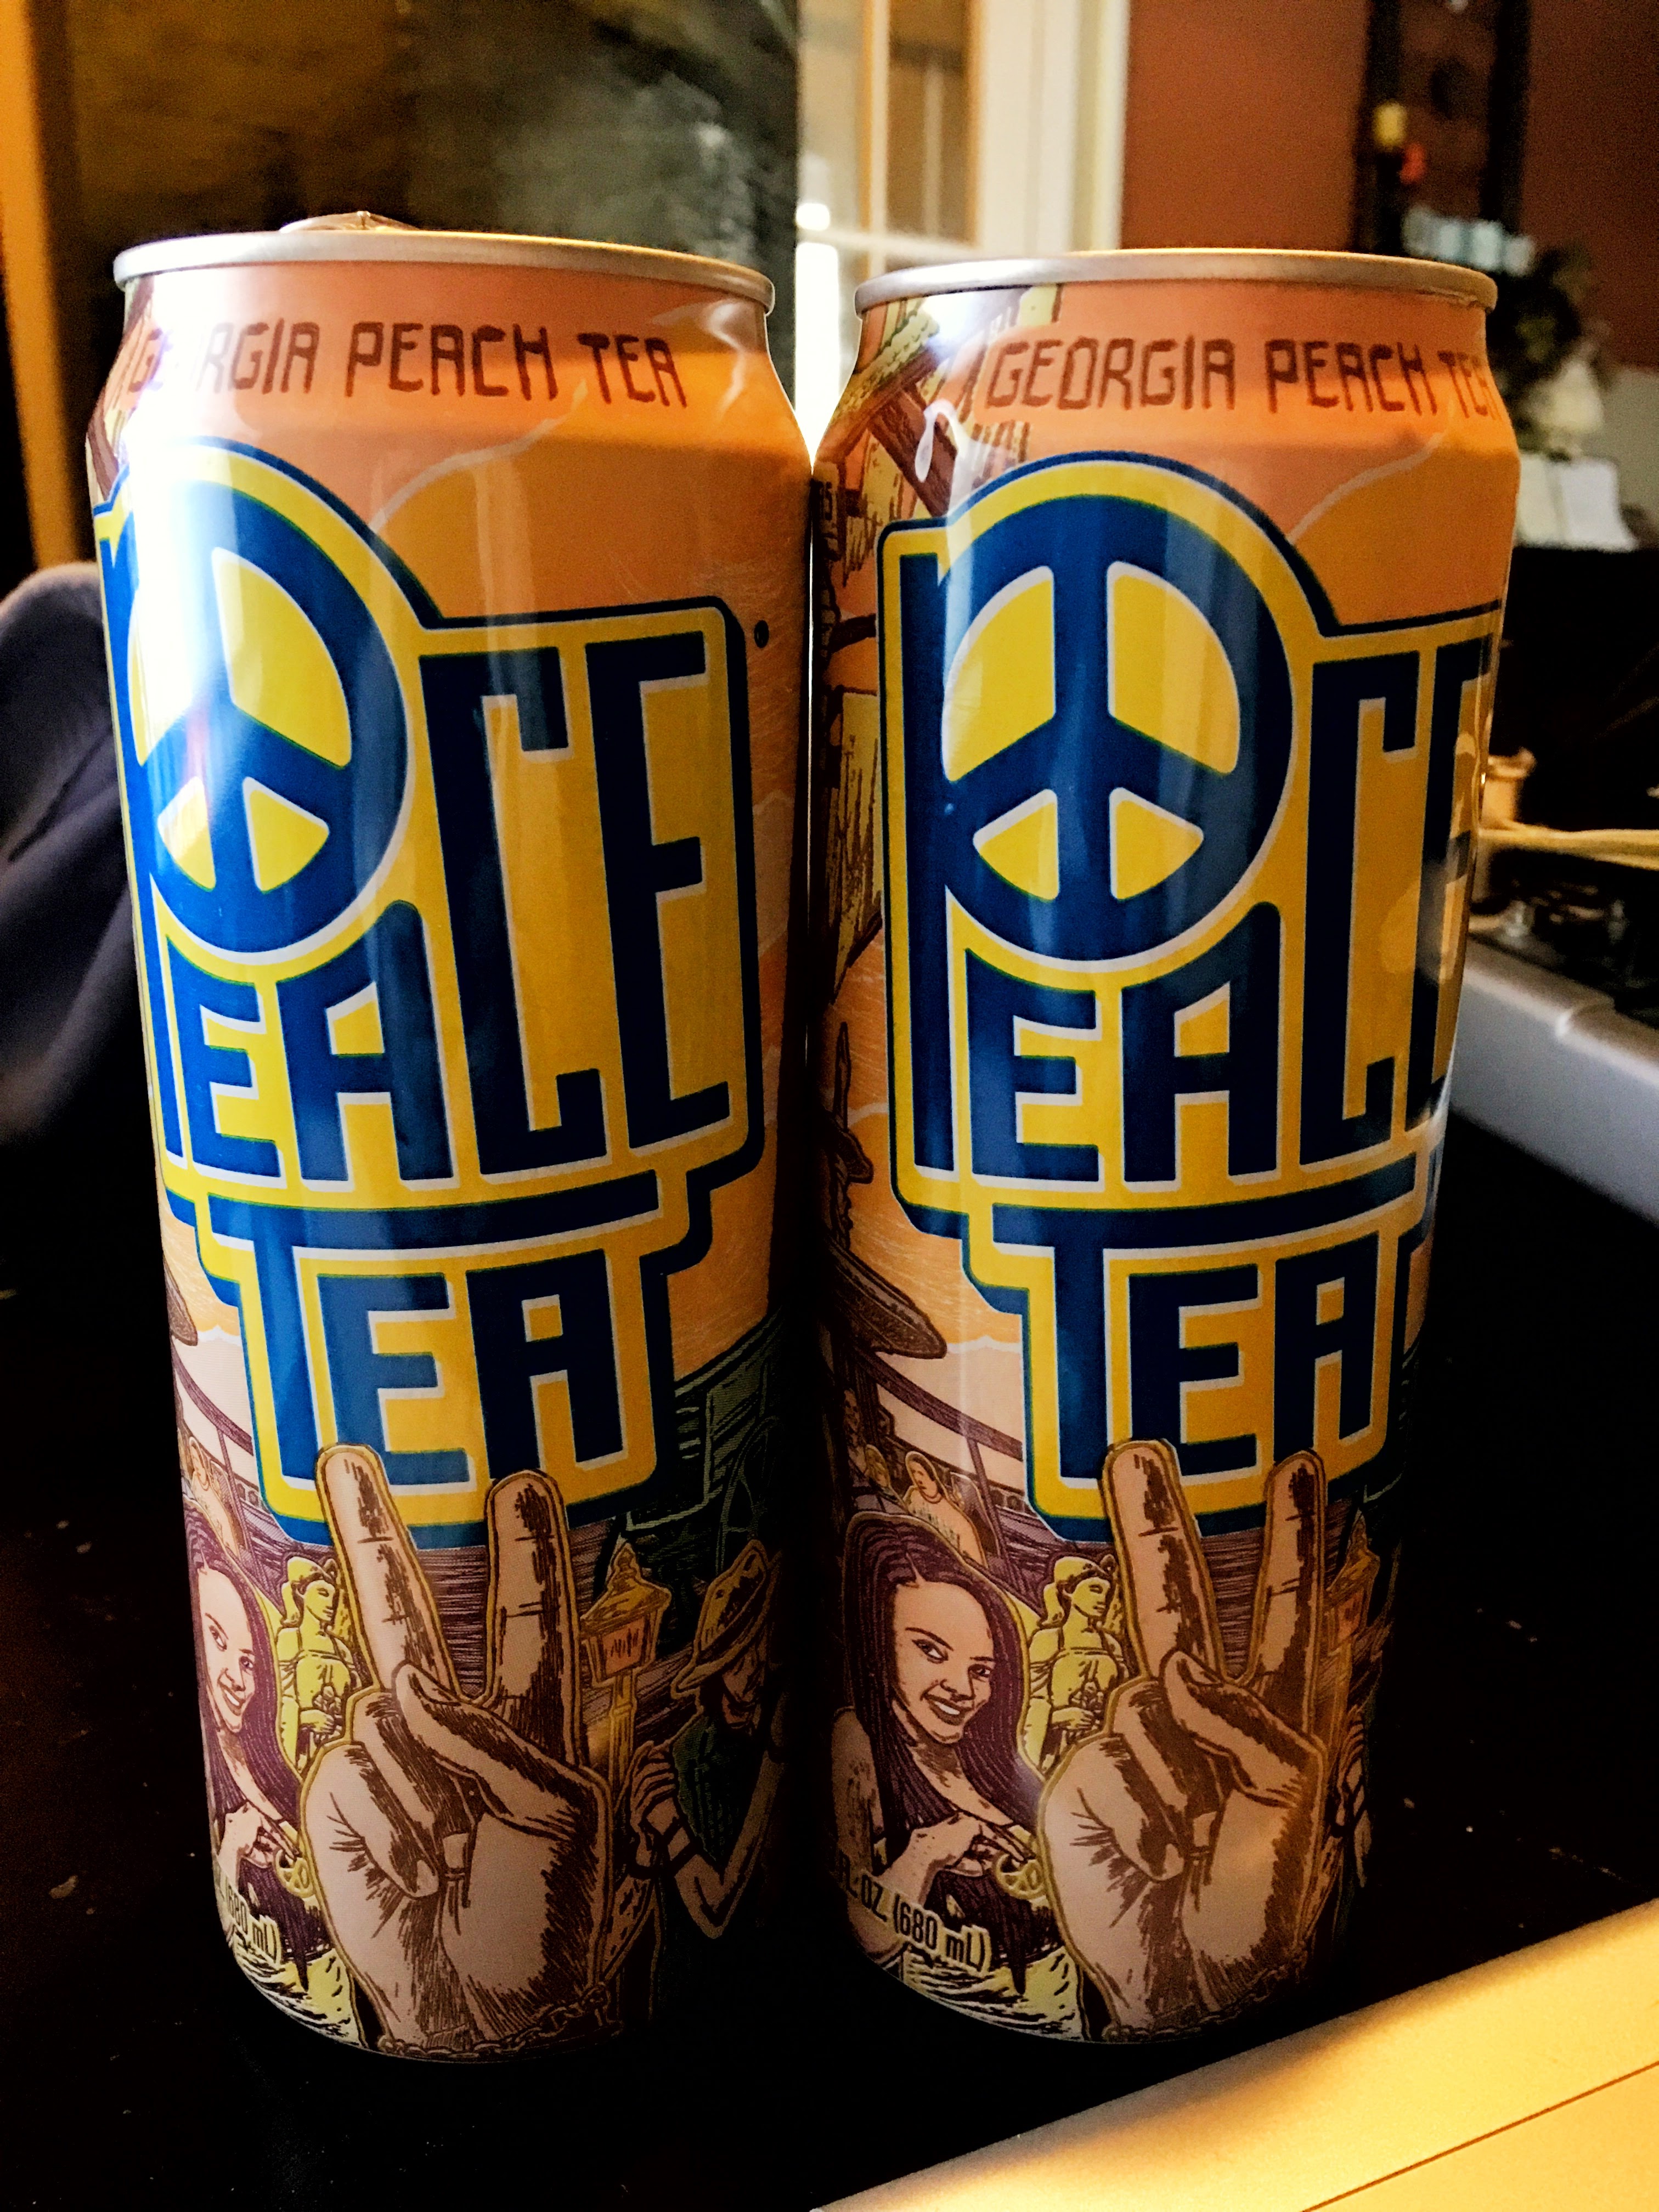 Peace Tea’s Georgia Peach